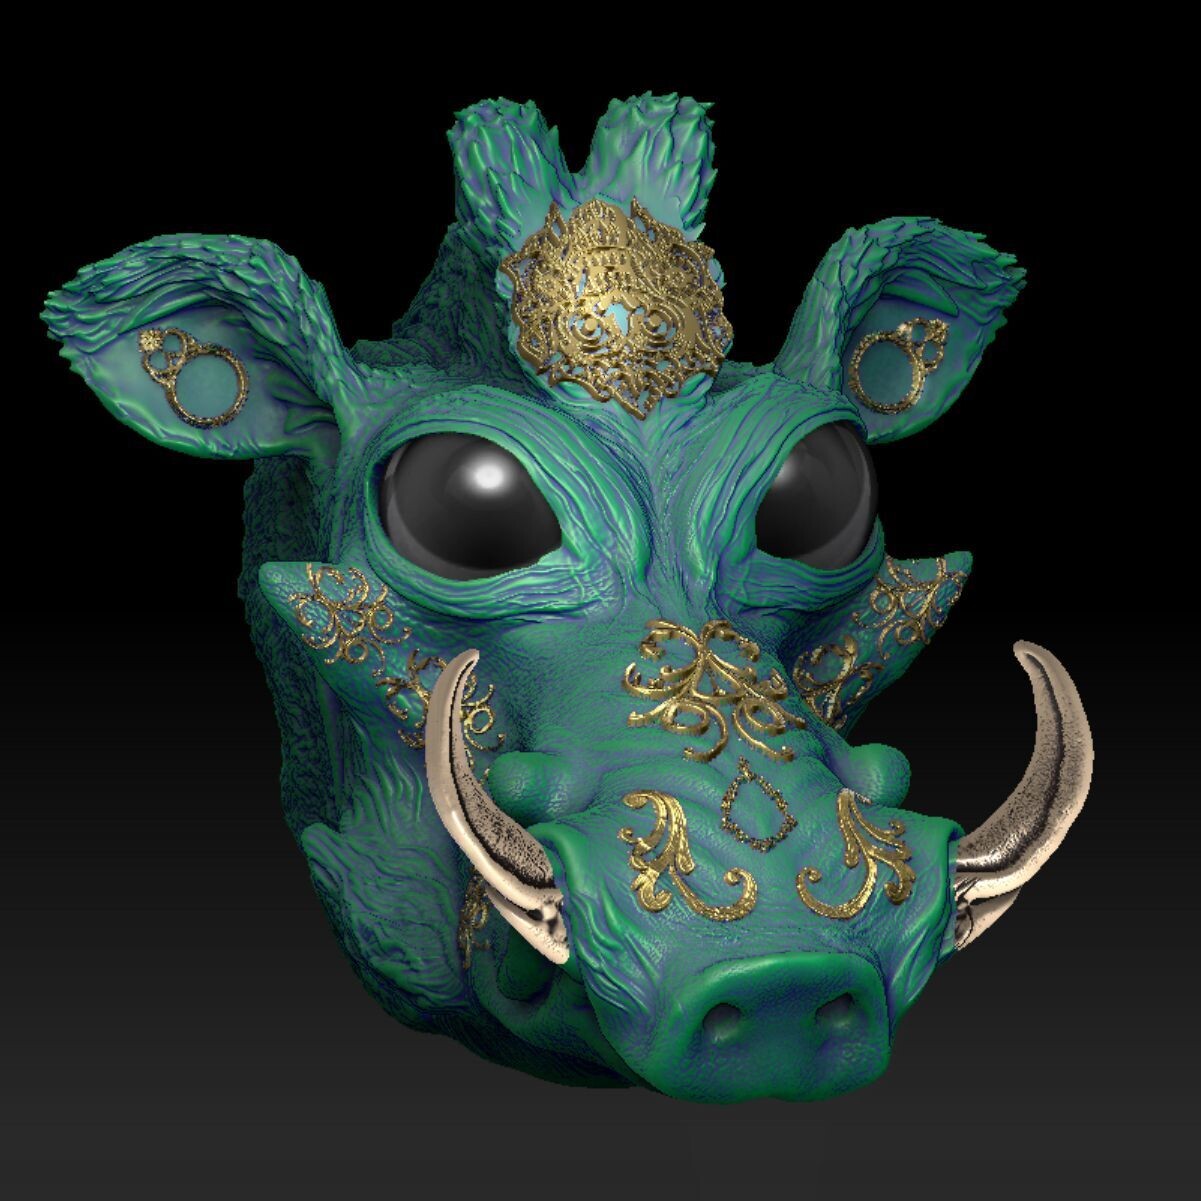 Fantasia Fauna-Kibali-Warzenschwein - 3D Modell